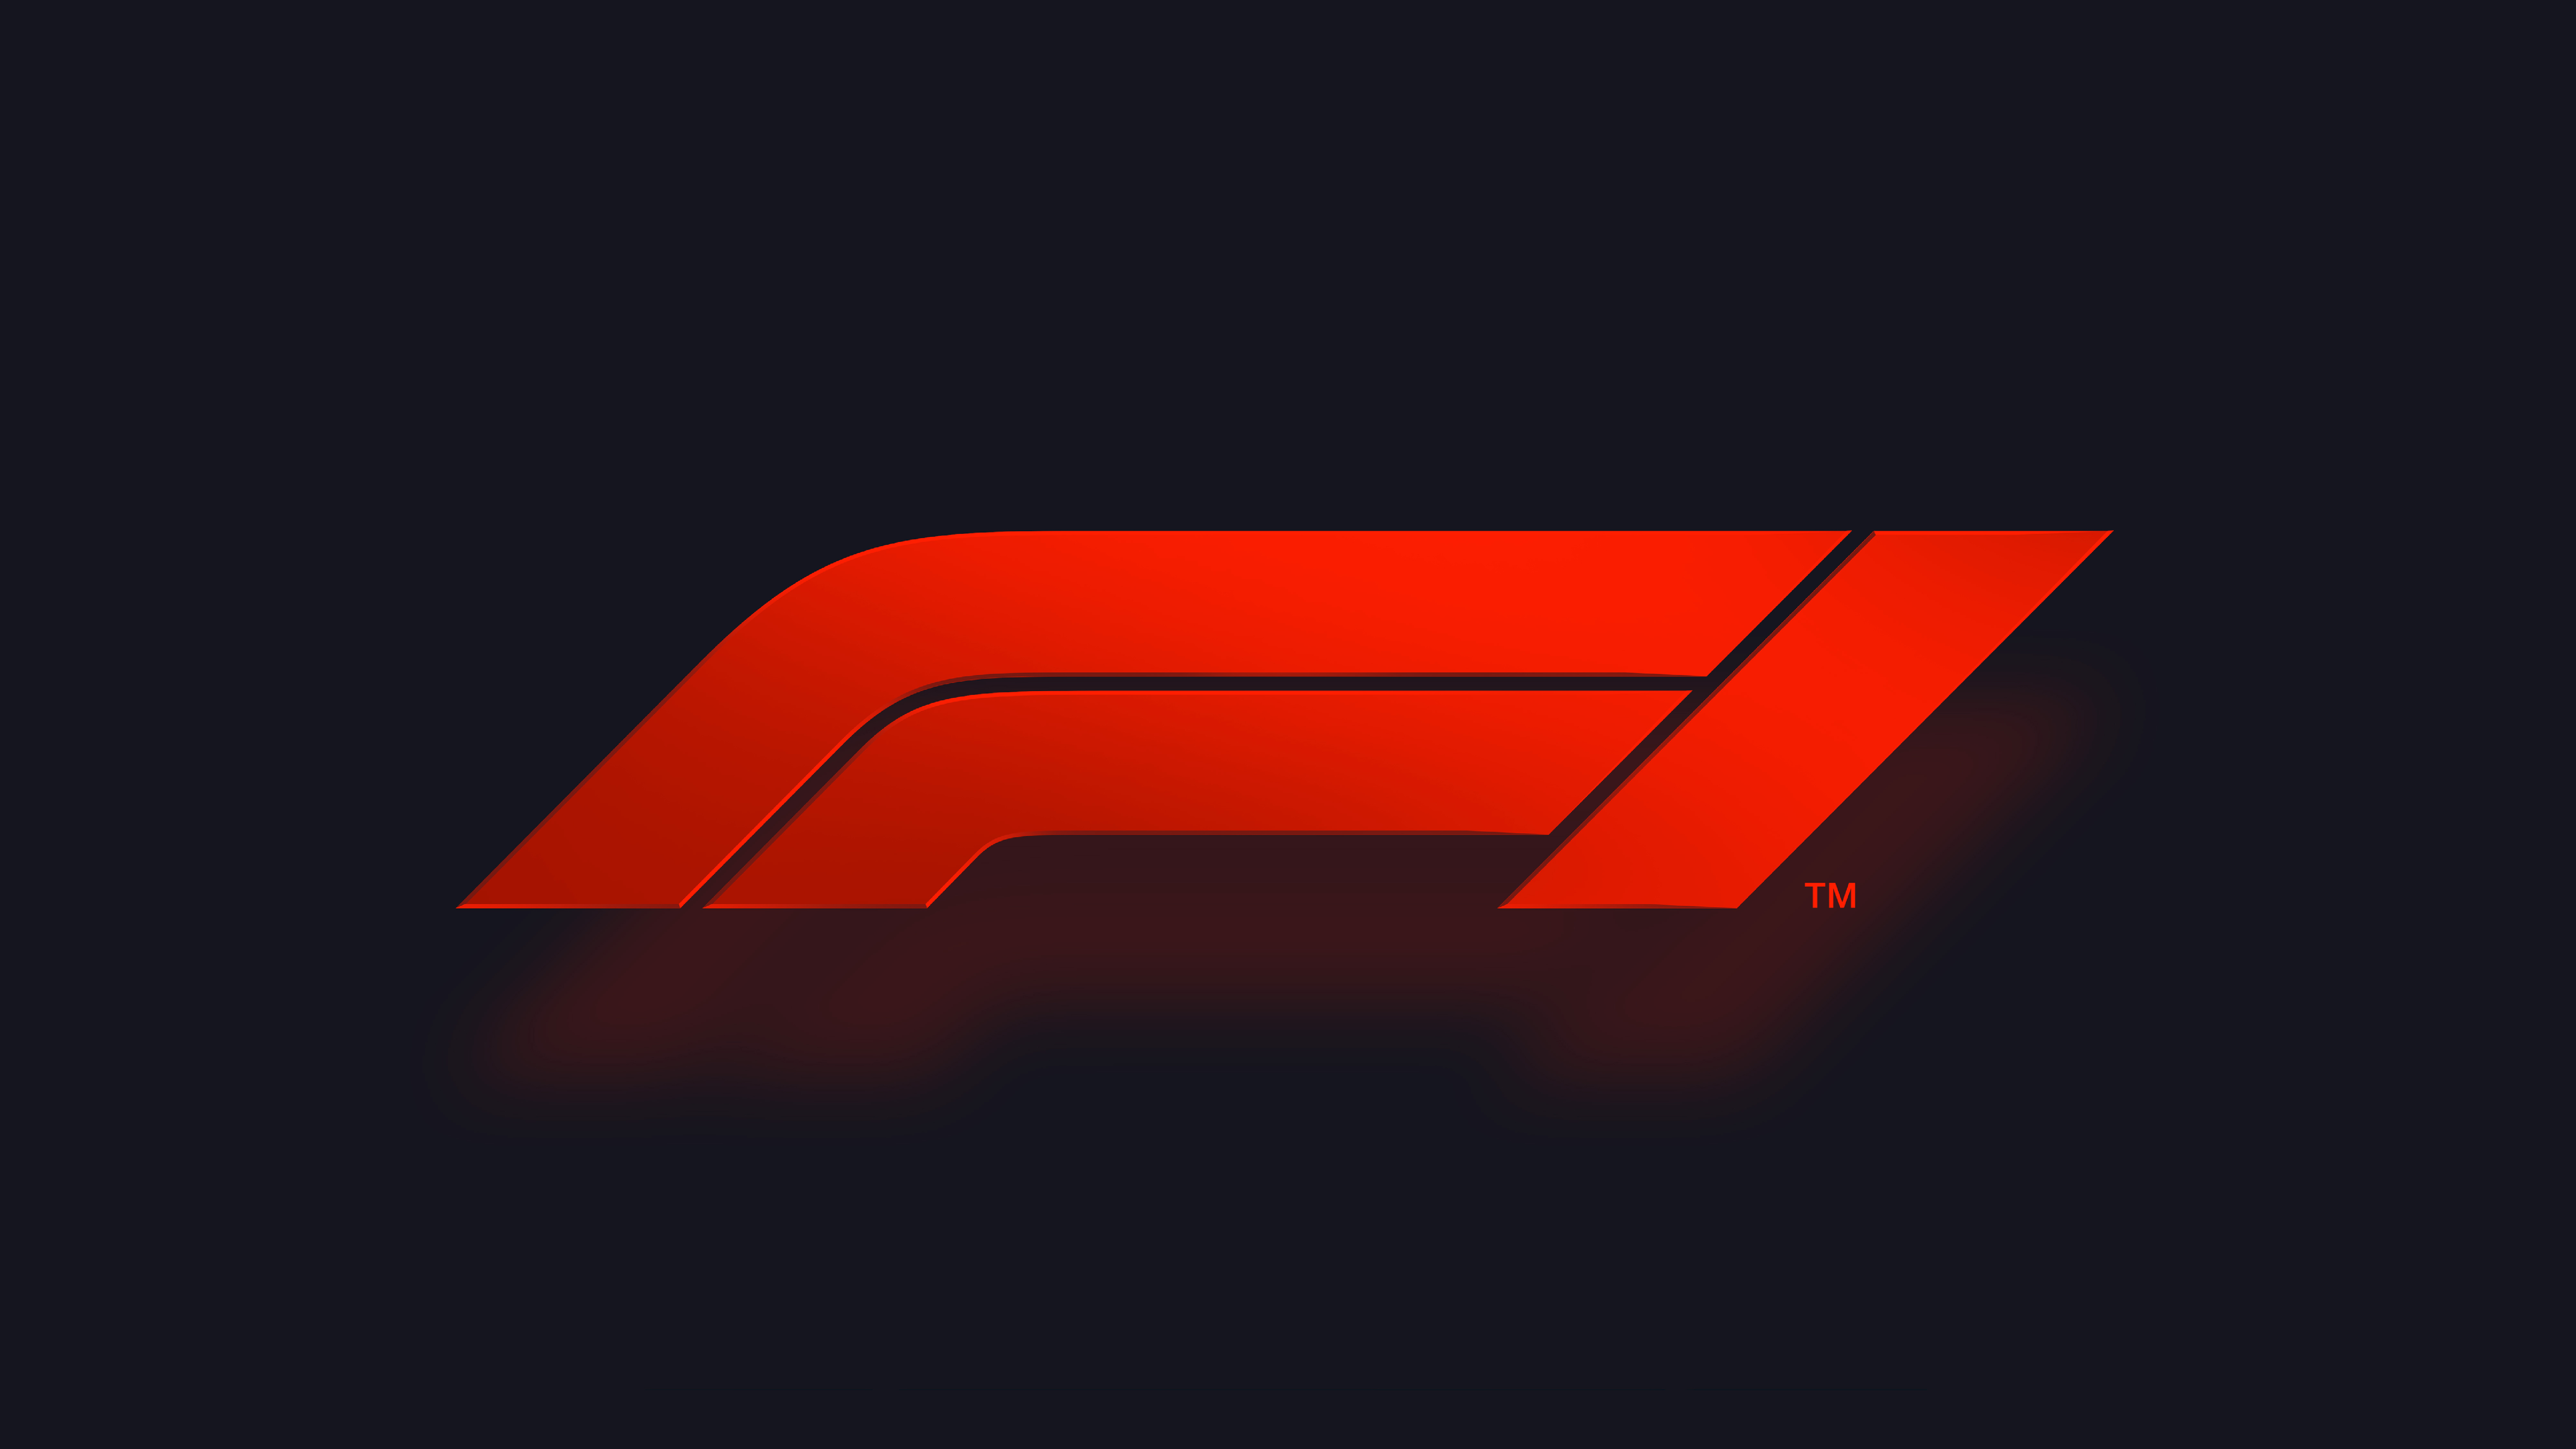 F1 Logo 4K 8K